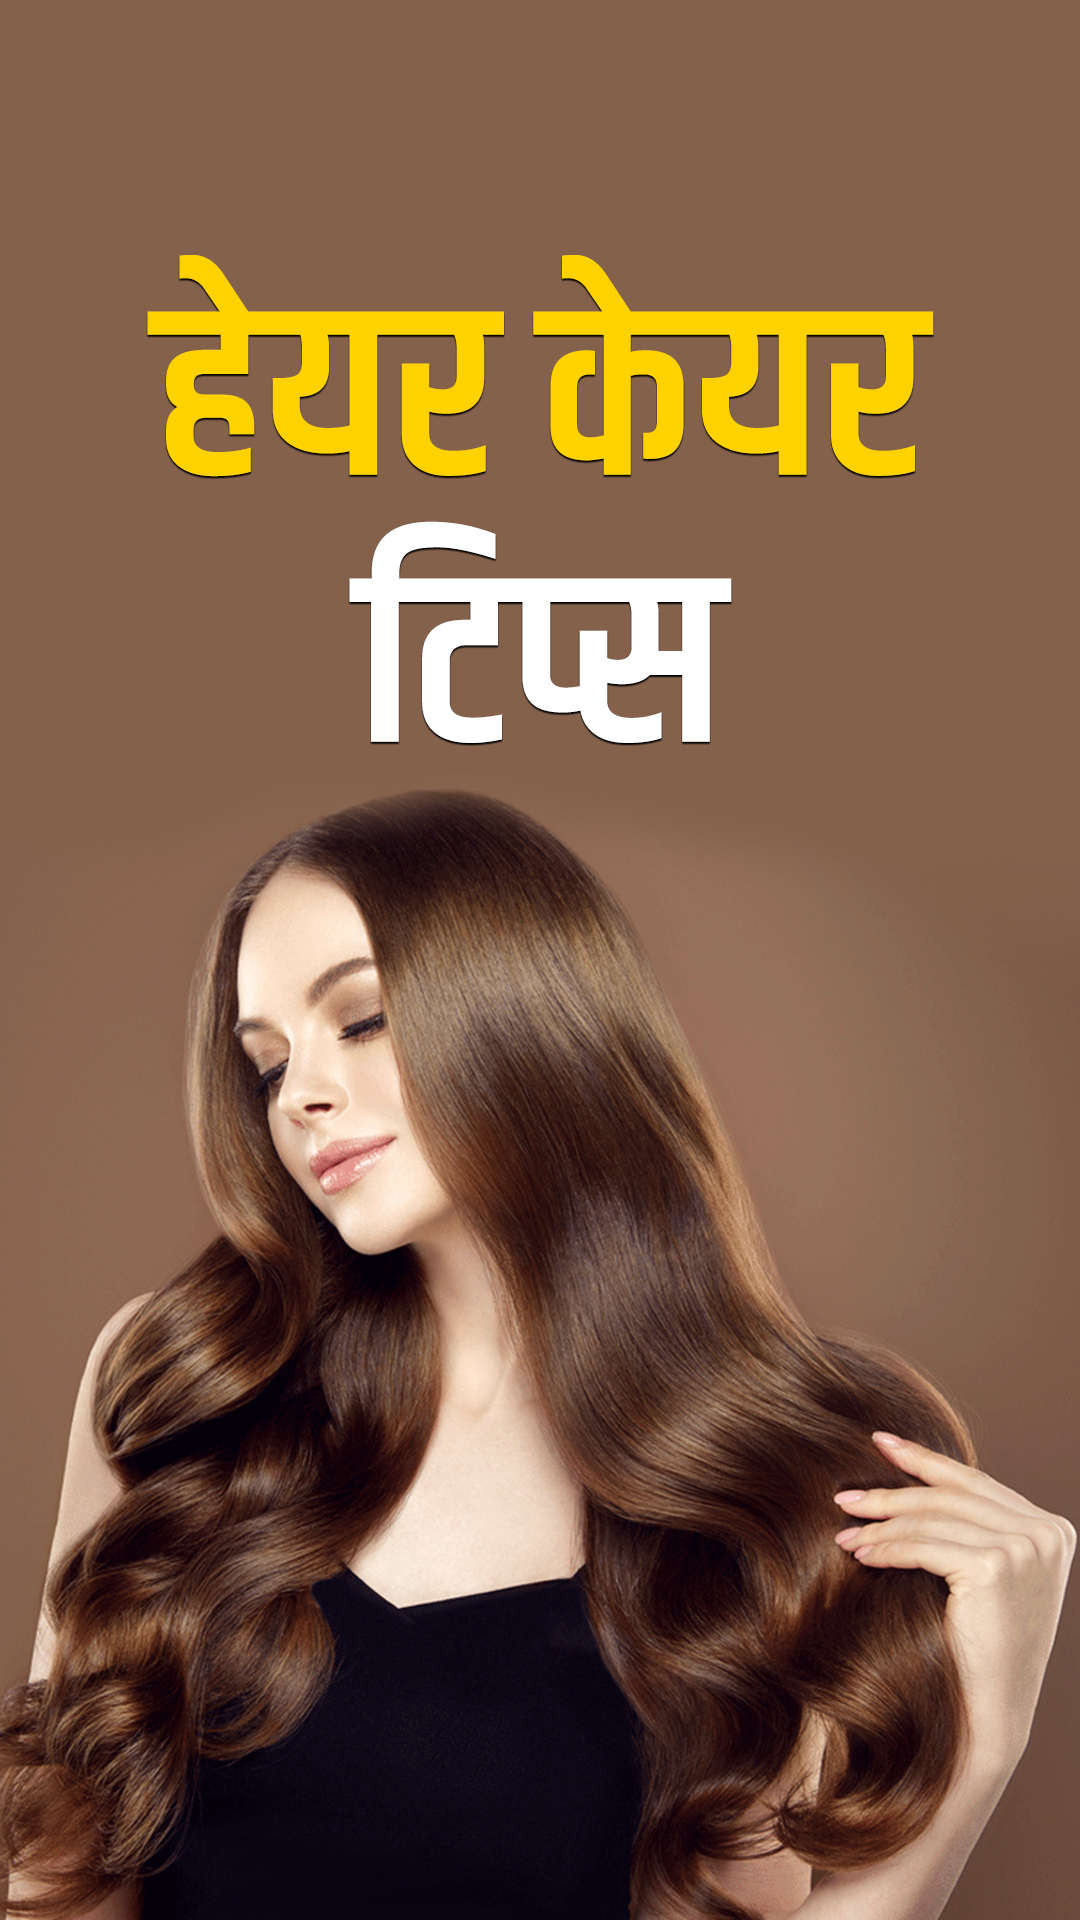 Tips for Long Hair in Hindi: बालों को 1 महीने में लंबा करने के उपाय  |TheHealthSite Hindi | TheHealthSite.com हिंदी